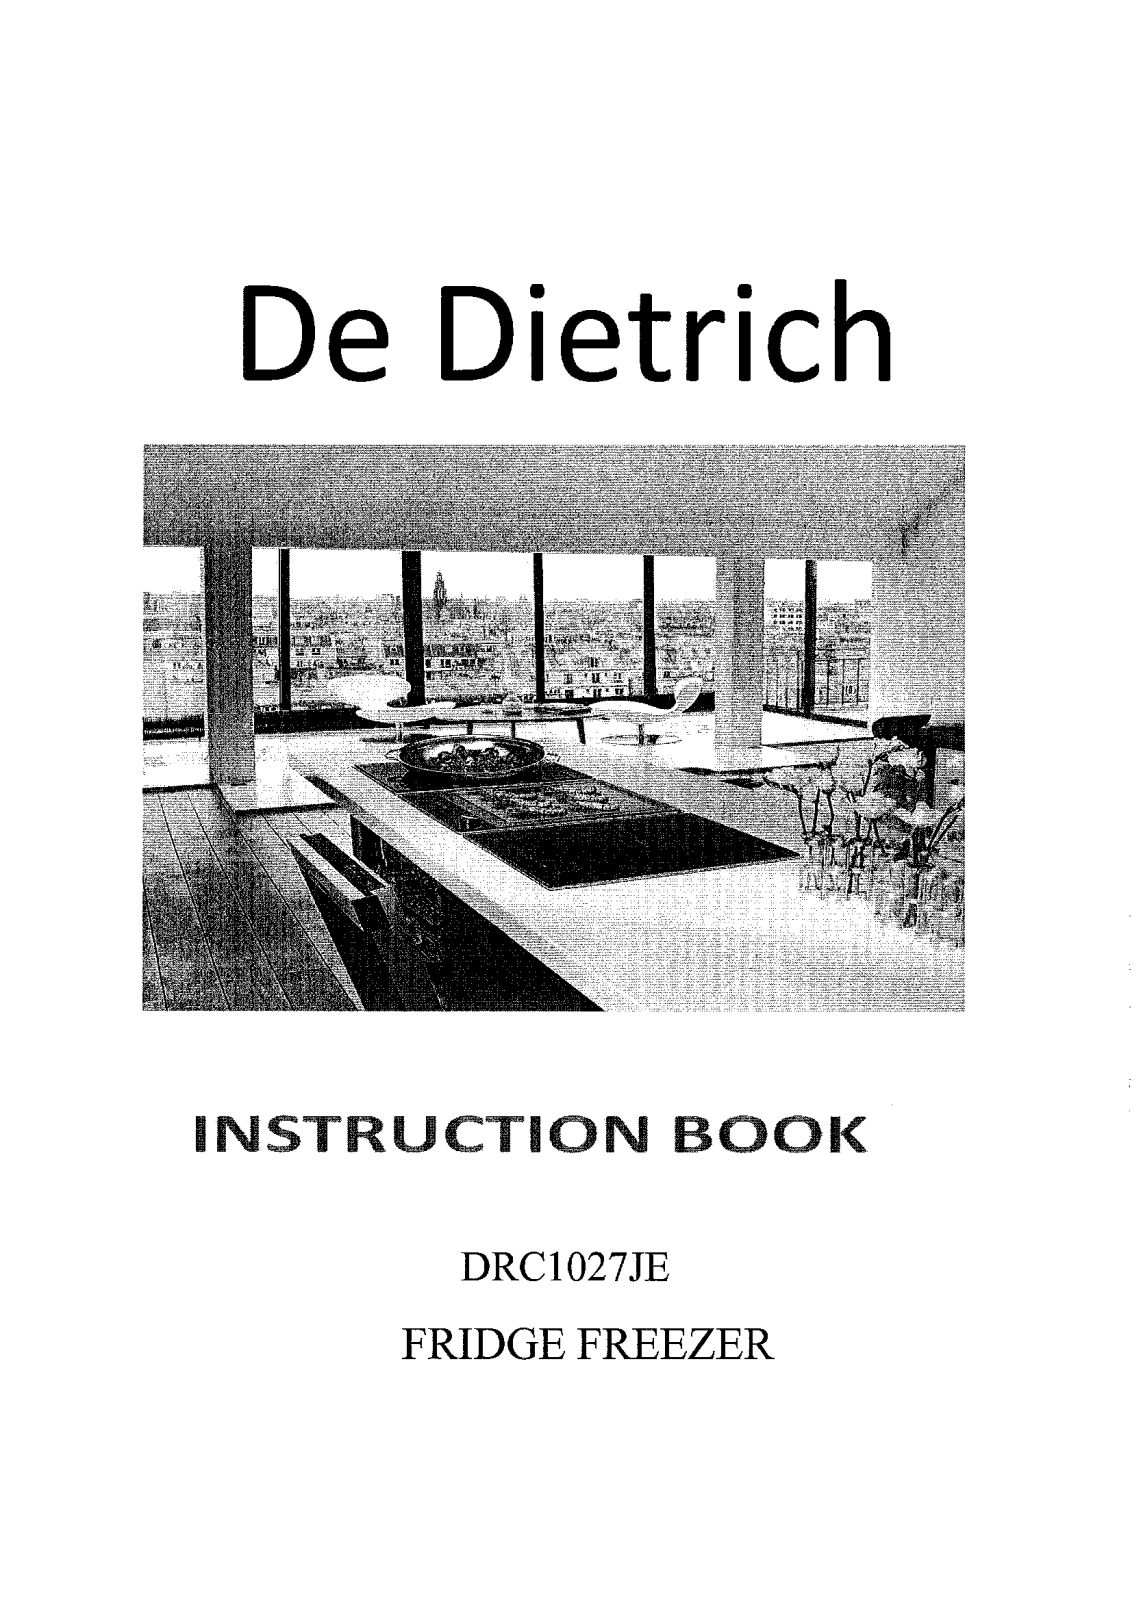 De dietrich DRC1027JE, DFN1124I, DFN1324I Manual